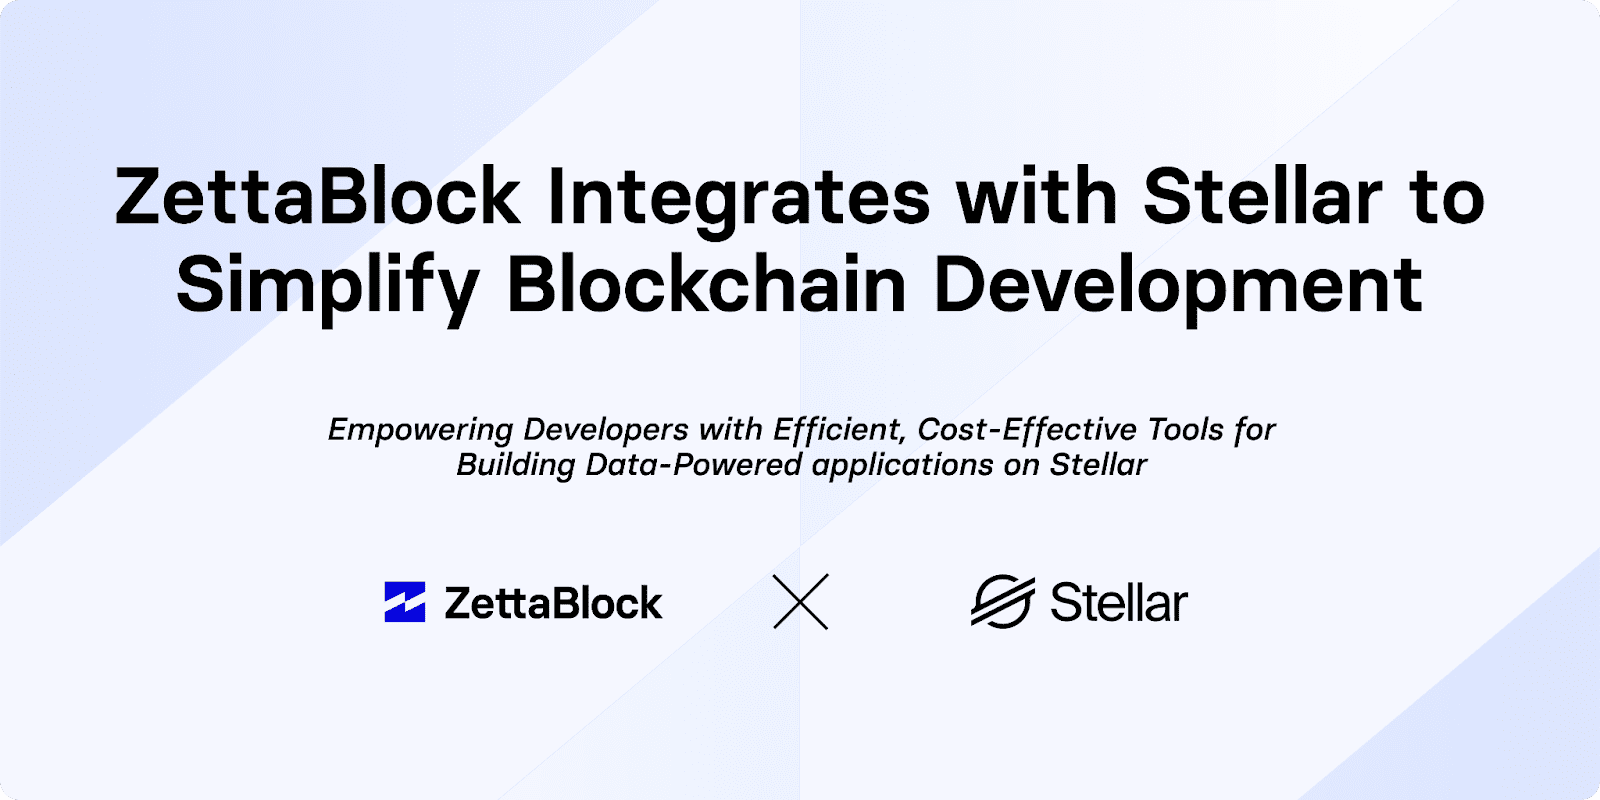 ZettaBlock Integrates with Stellar to Simplify Blockchain Development